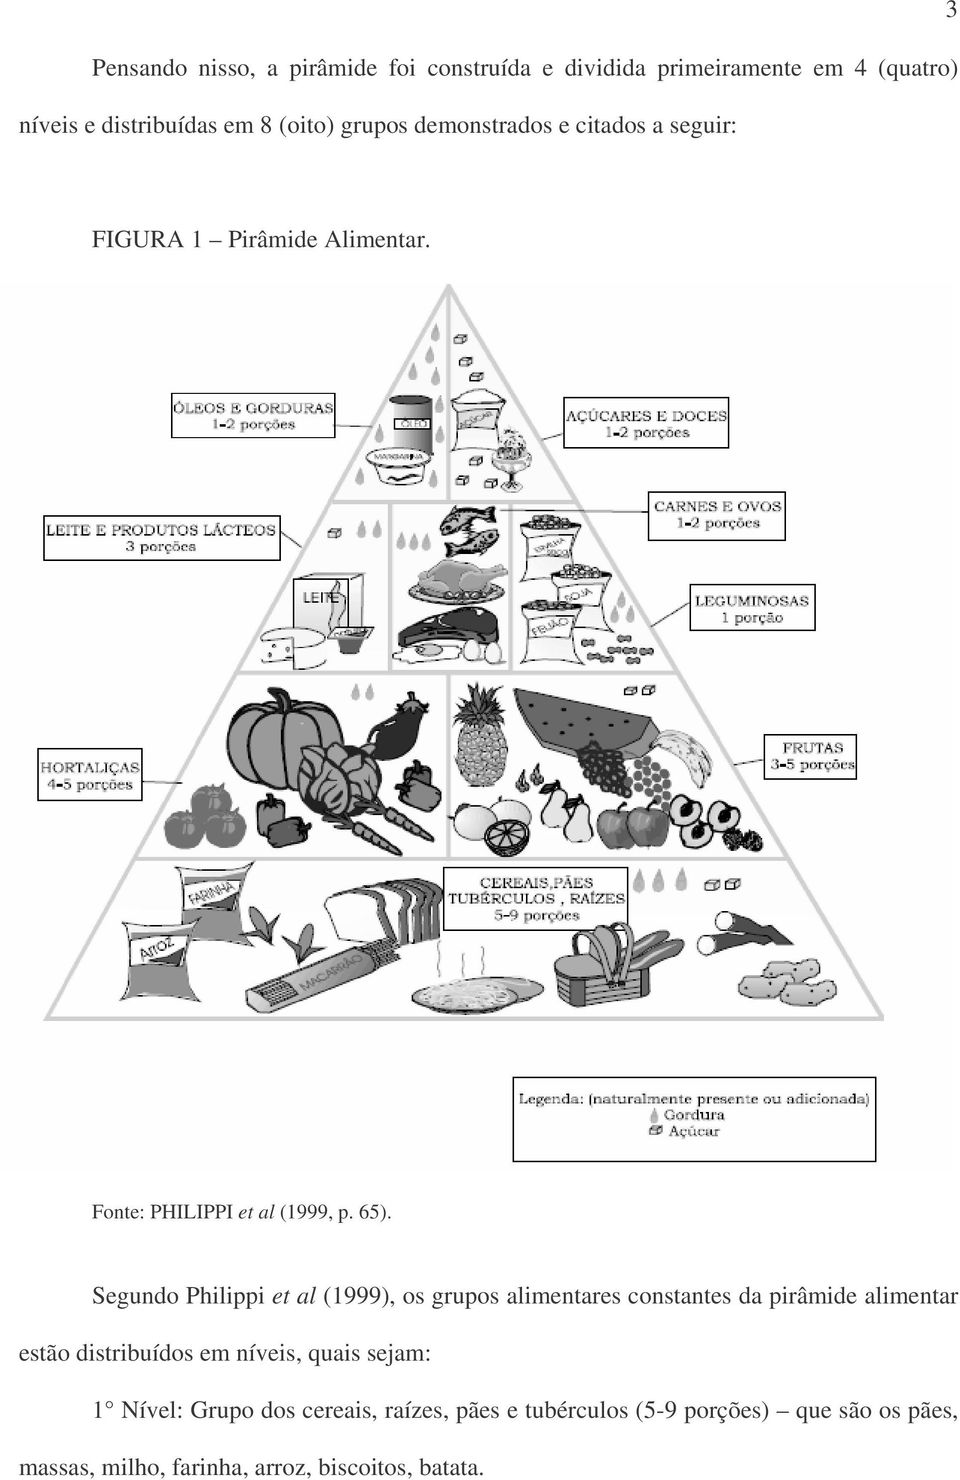 Segundo Philippi et al (1999), os grupos alimentares constantes da pirâmide alimentar estão distribuídos em níveis, quais